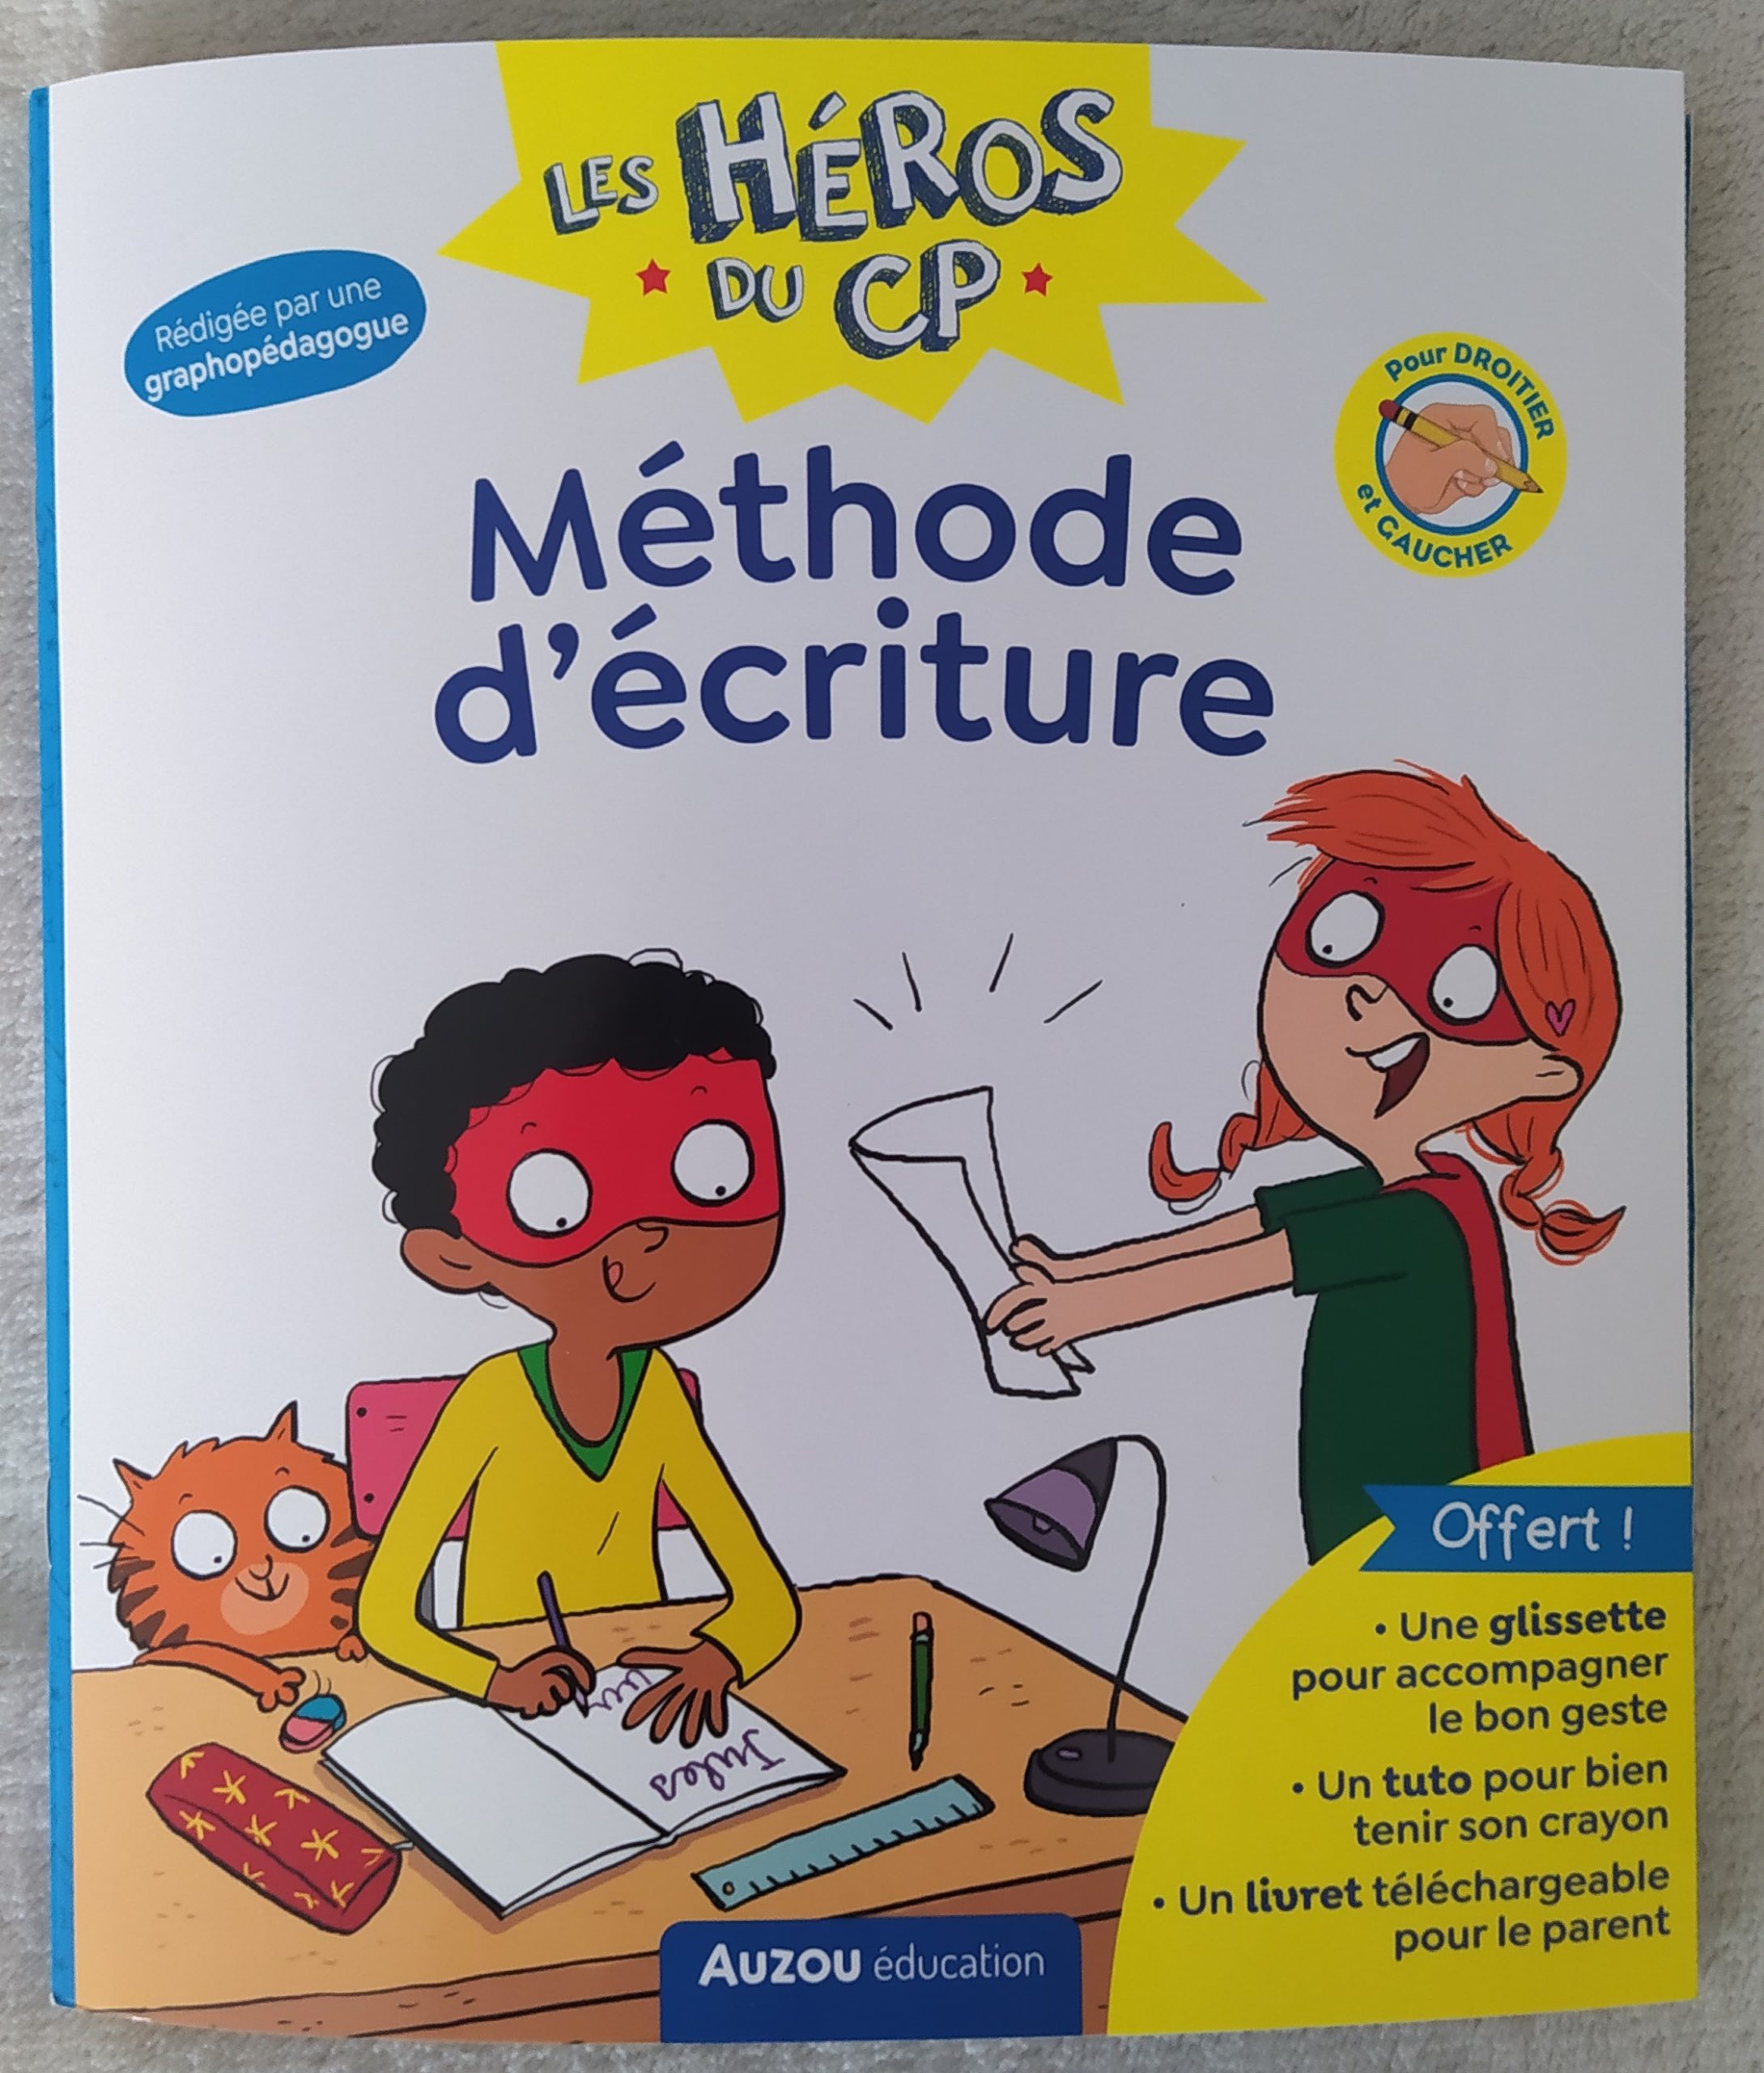 You are currently viewing Méthode d’écriture – Les Héros du CP